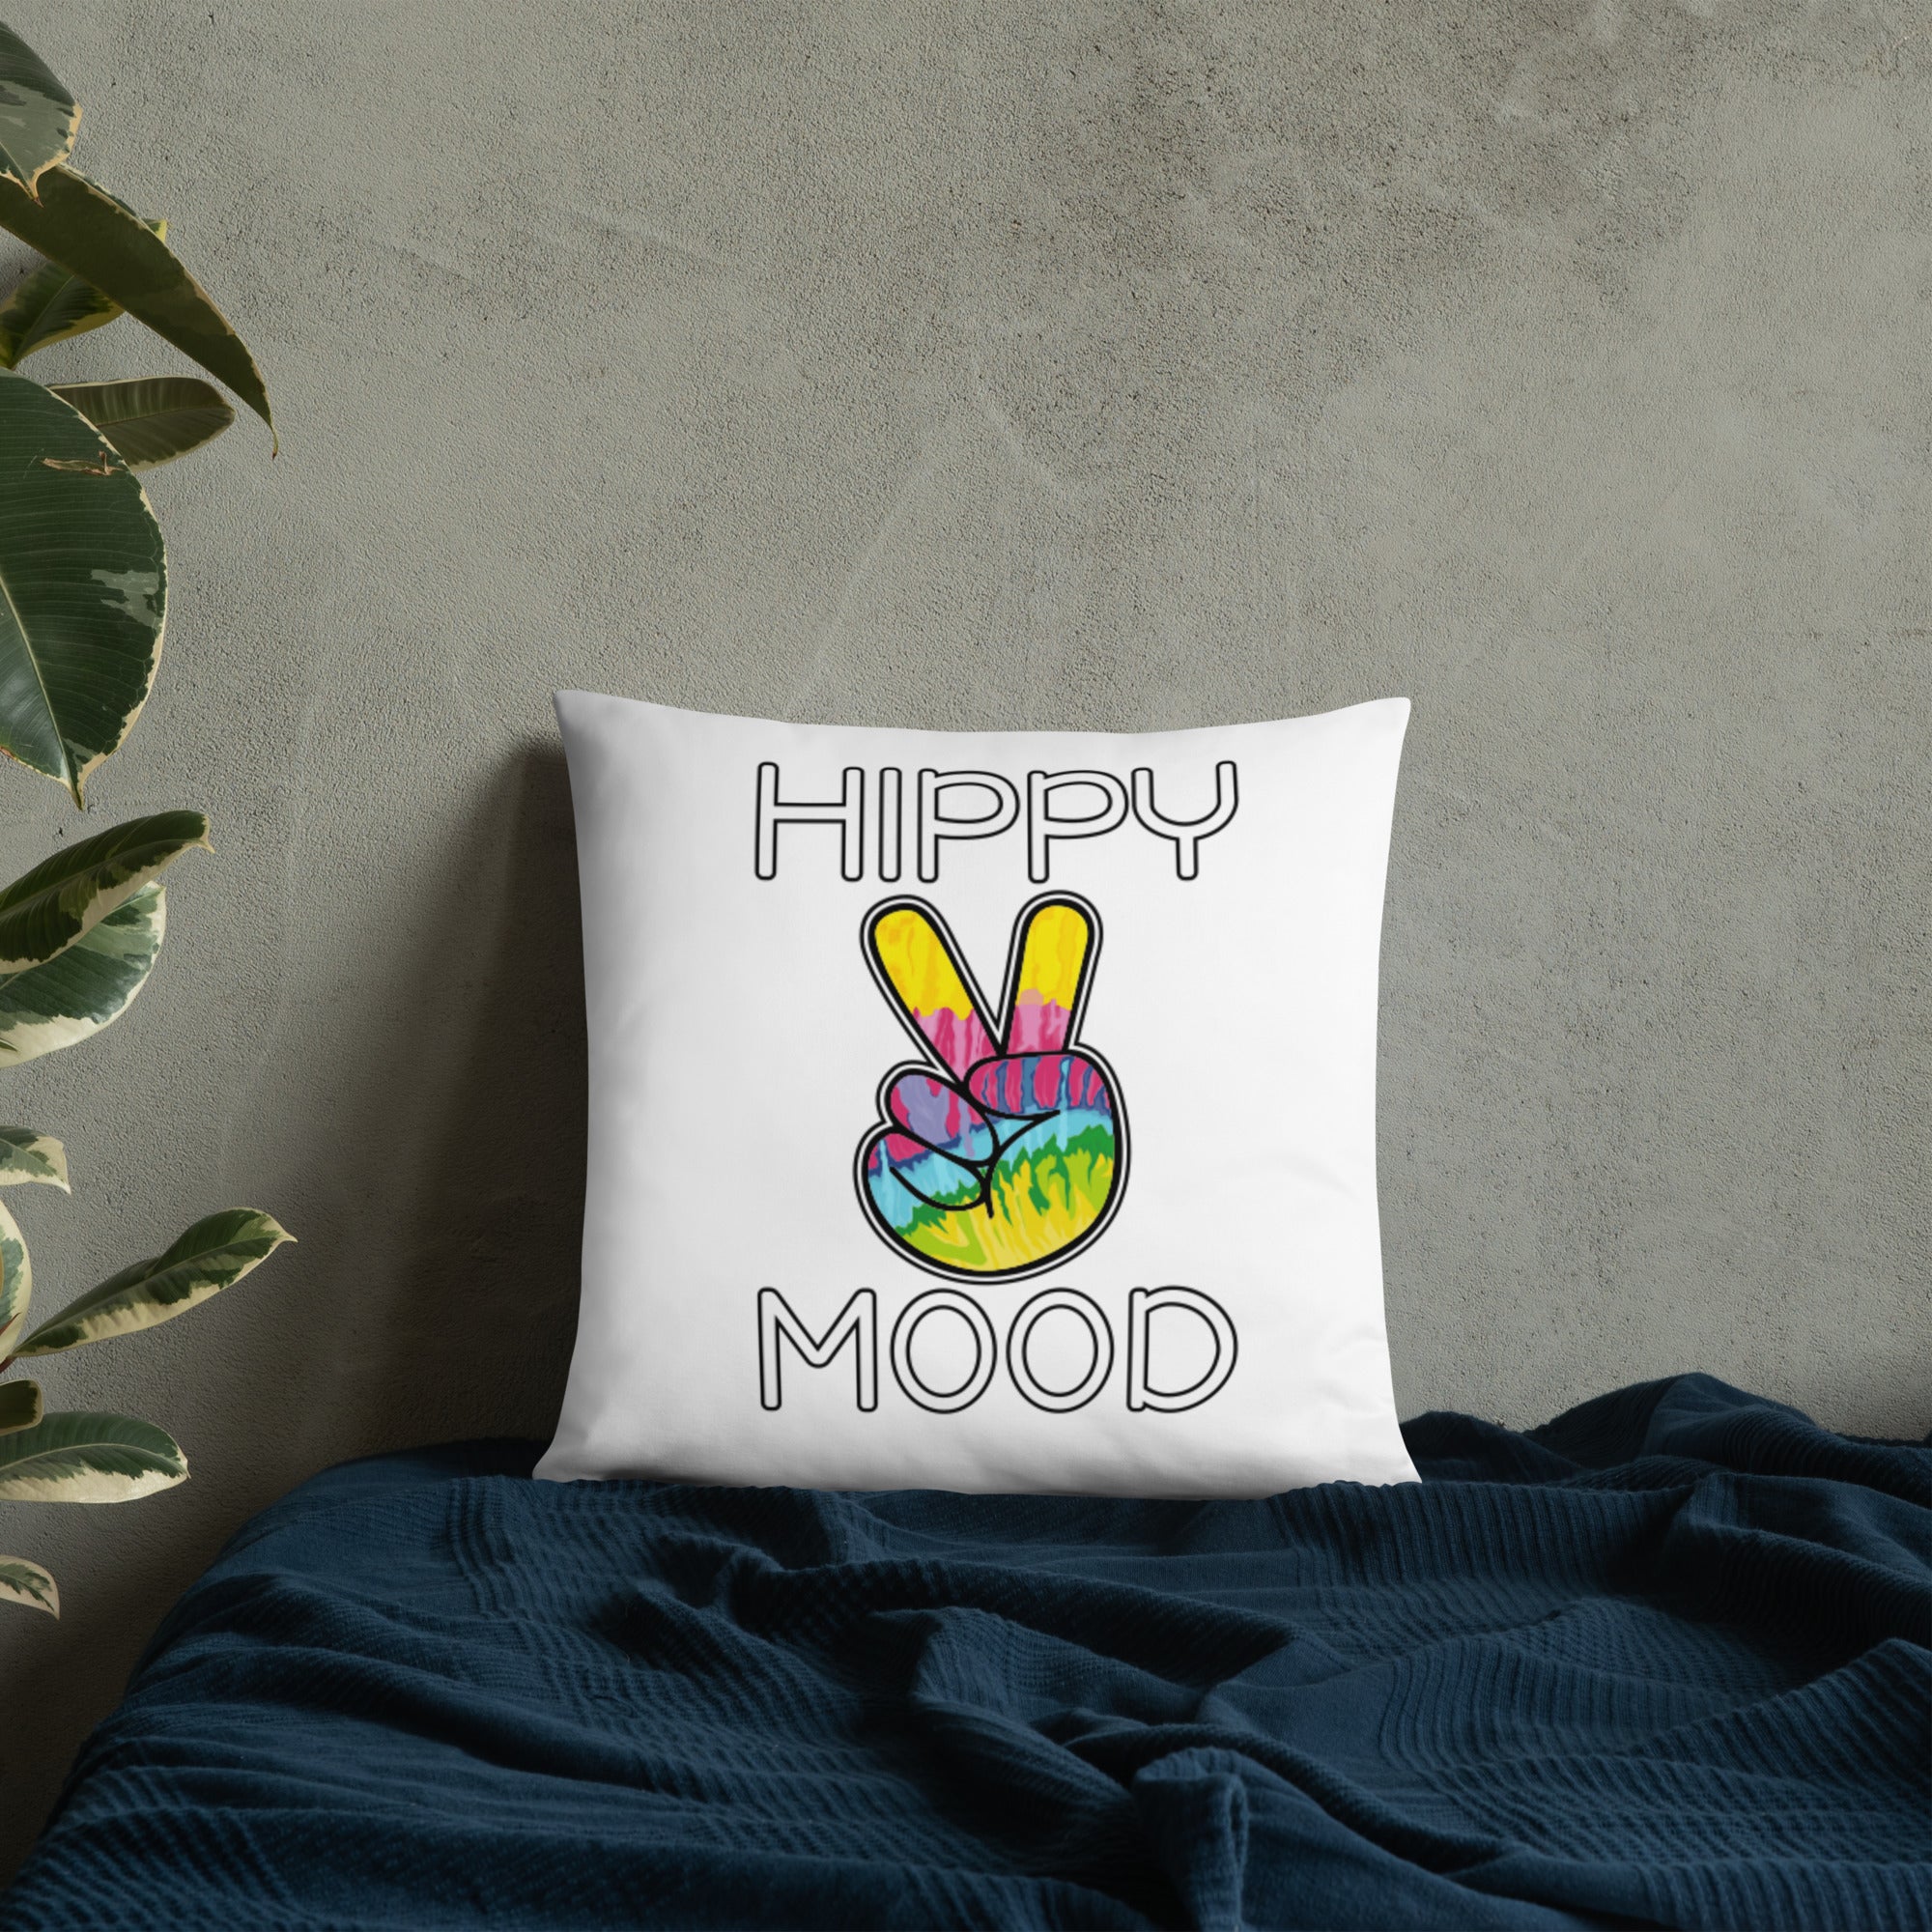 Hippy Mood Tie Dye Pillows